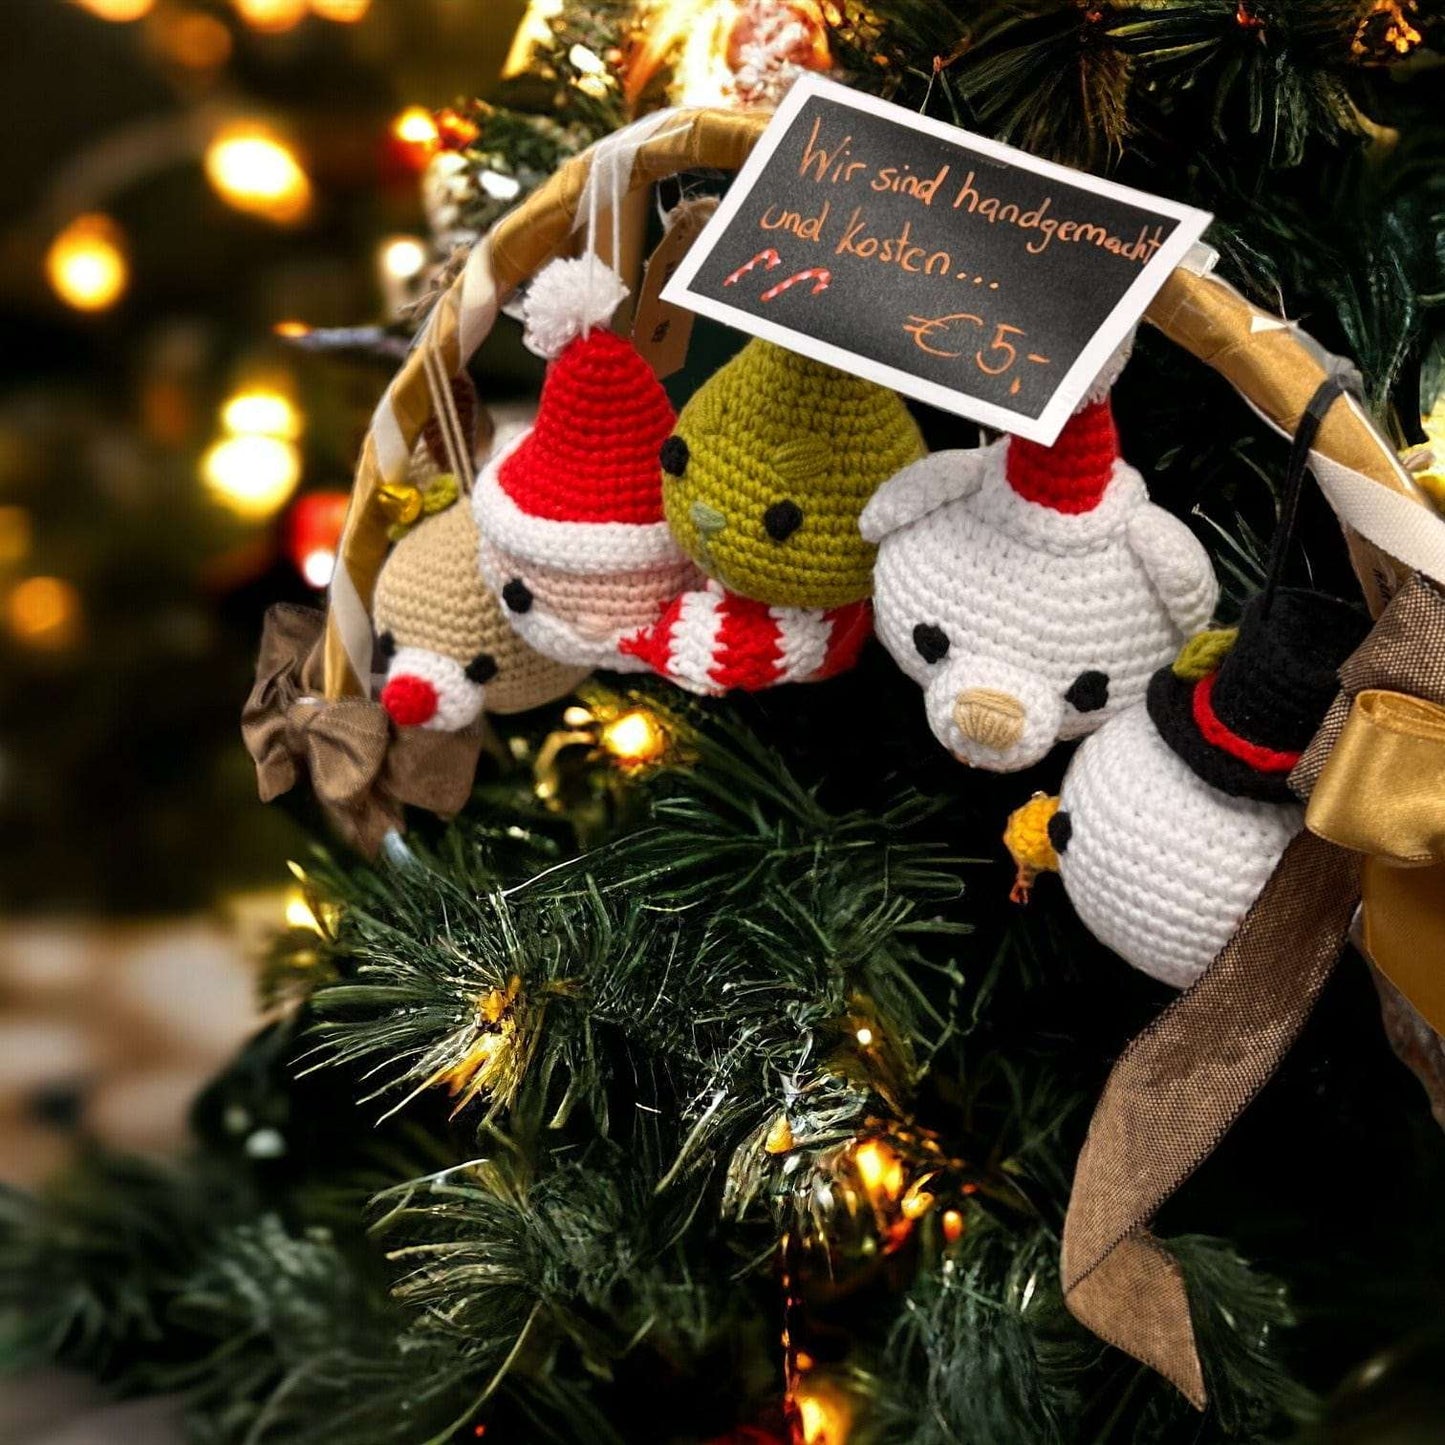 Amigurumi Weihnachtsanhänger in verschiedenen Designs Home Decor LändleHäkel oesterreich handgemachte geschenke in wien